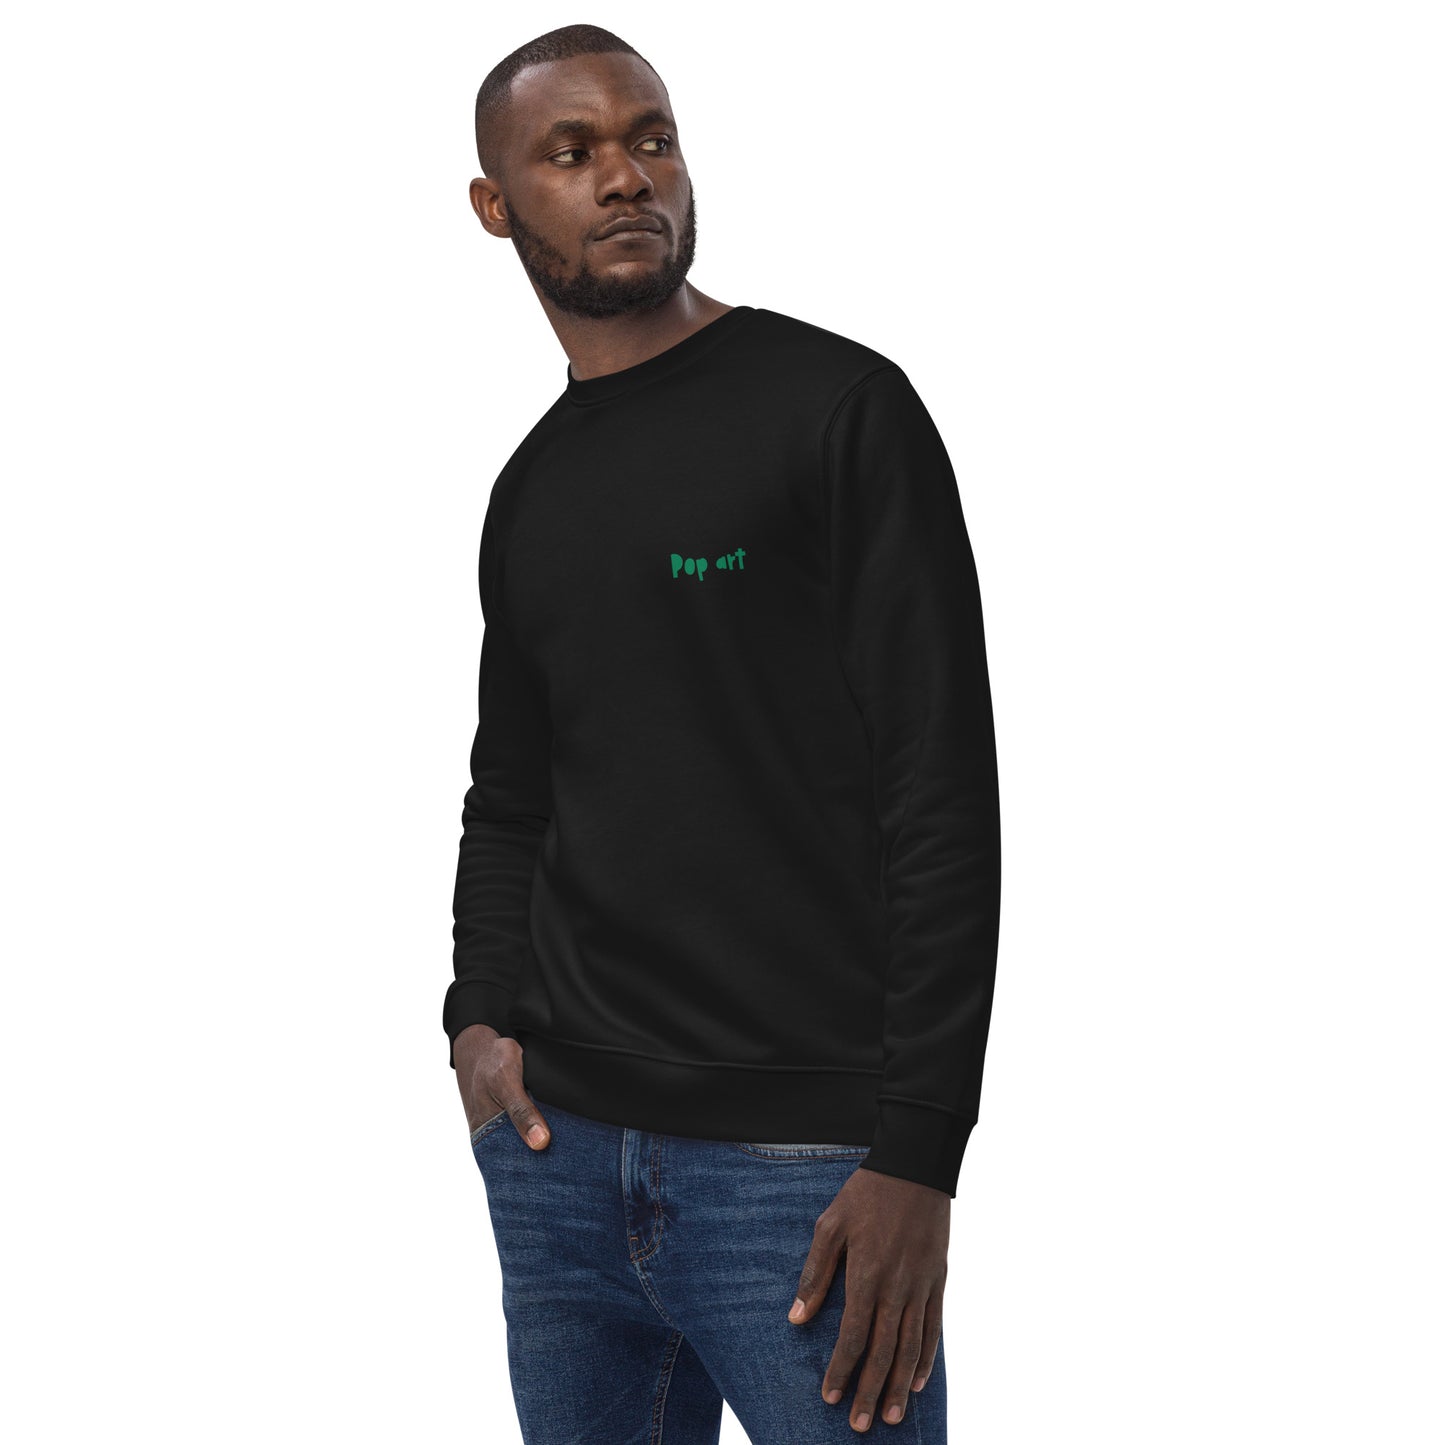 Unisex eco sweatshirt with pop art Wow design (Vecteezy.com)